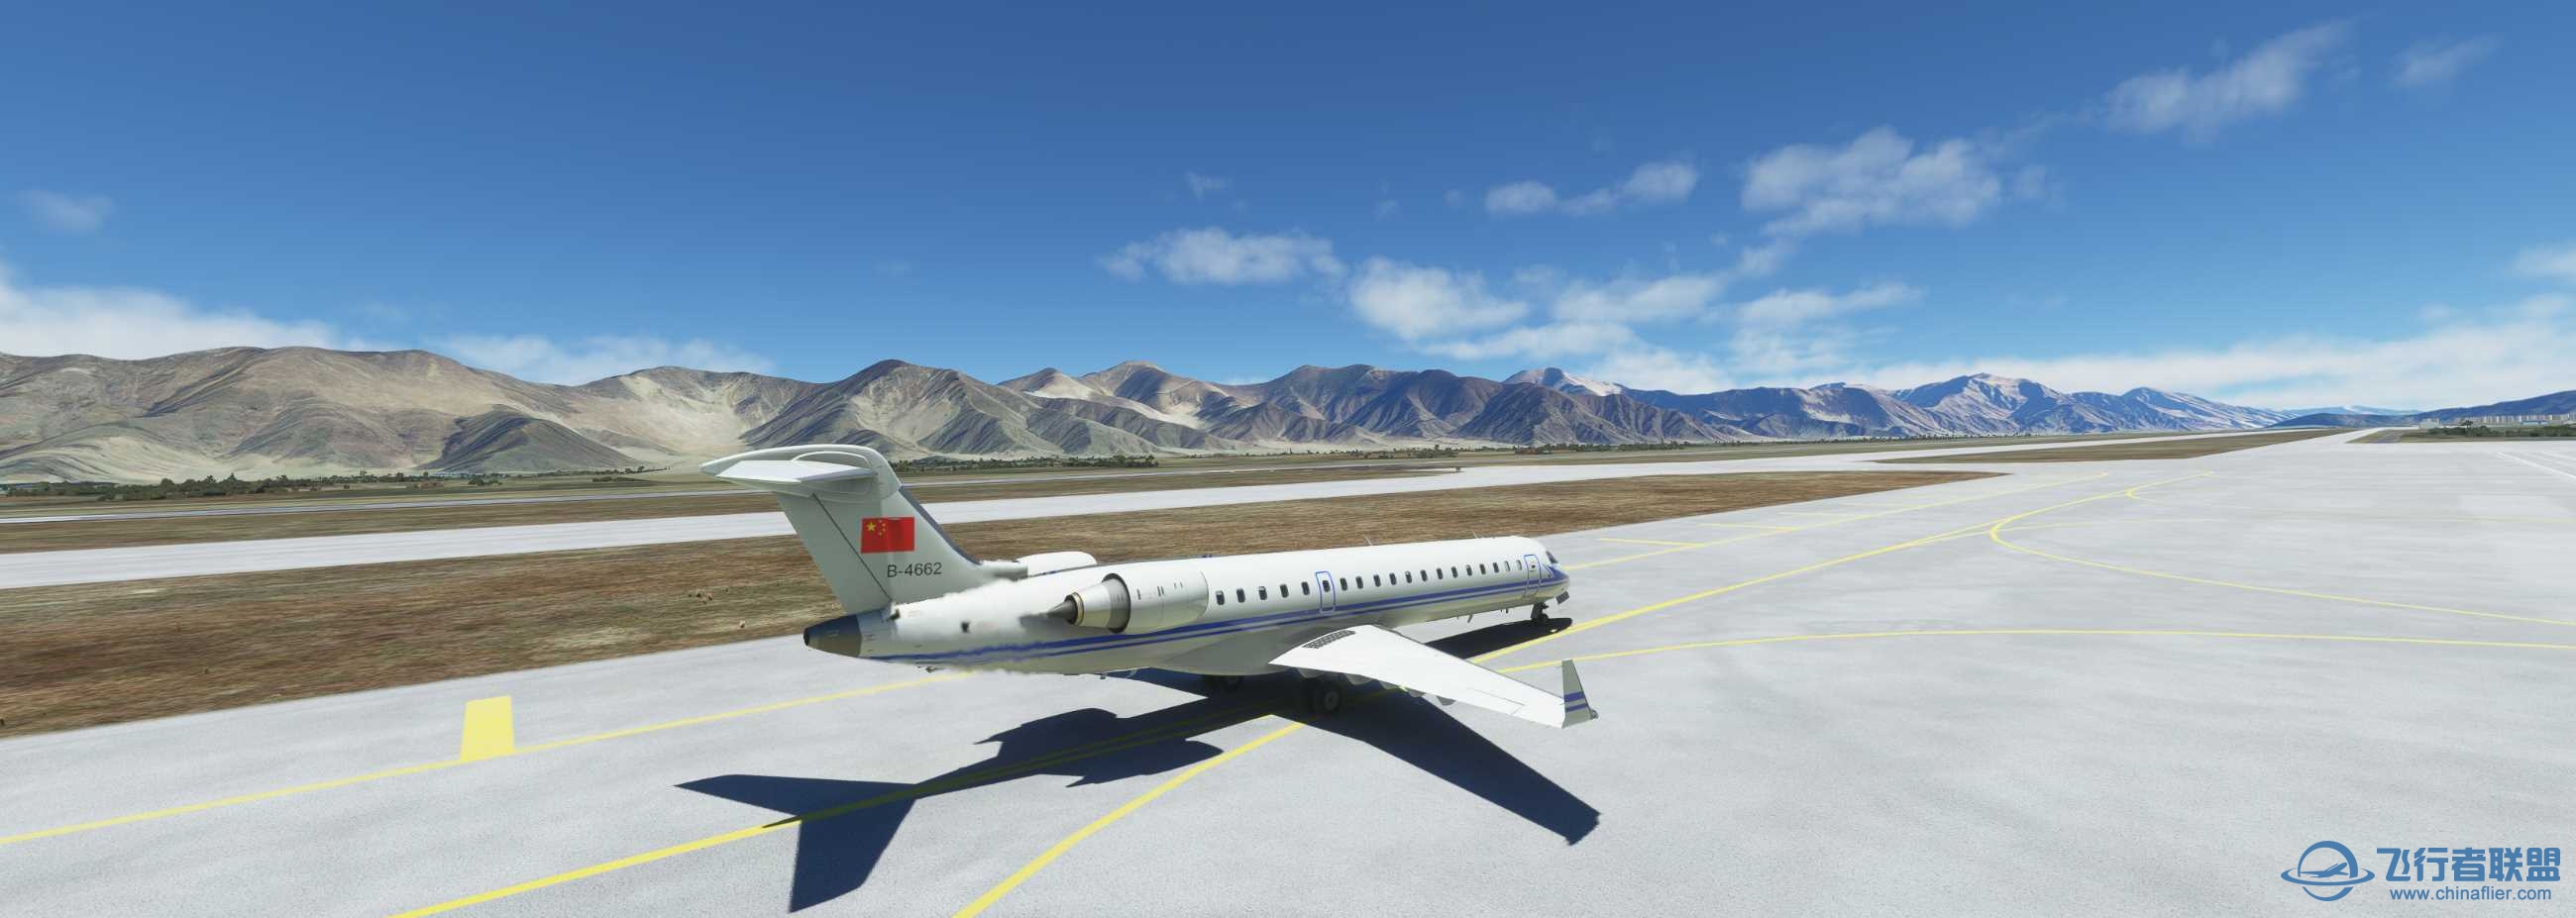 CRJ-700空军涂装 拉萨到香港-915 